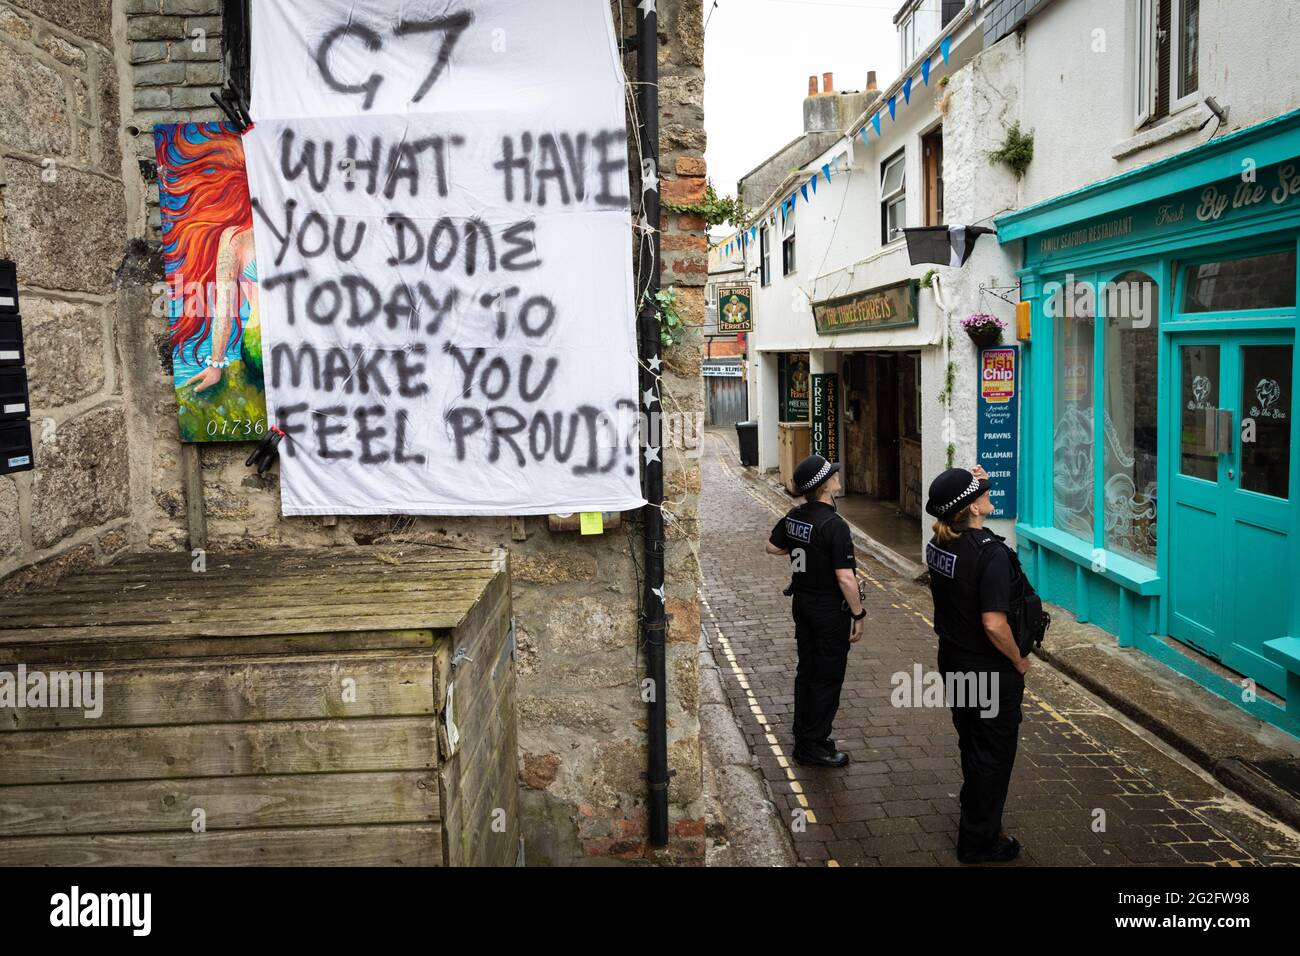 St Ives, Großbritannien. Juni 2021. Ein G7-Banner hängt in der Straße von St. Ives, während zwei Polizisten auf der Straße anhalten. Extinction Rebellion organisierte die Demonstration anlässlich des G7-Gipfels. Bei der Veranstaltung treffen sich die Staats- und Regierungschefs der Welt, um Fragen rund um den Klimawandel zu diskutieren. Kredit: Andy Barton/Alamy Live Nachrichten Stockfoto